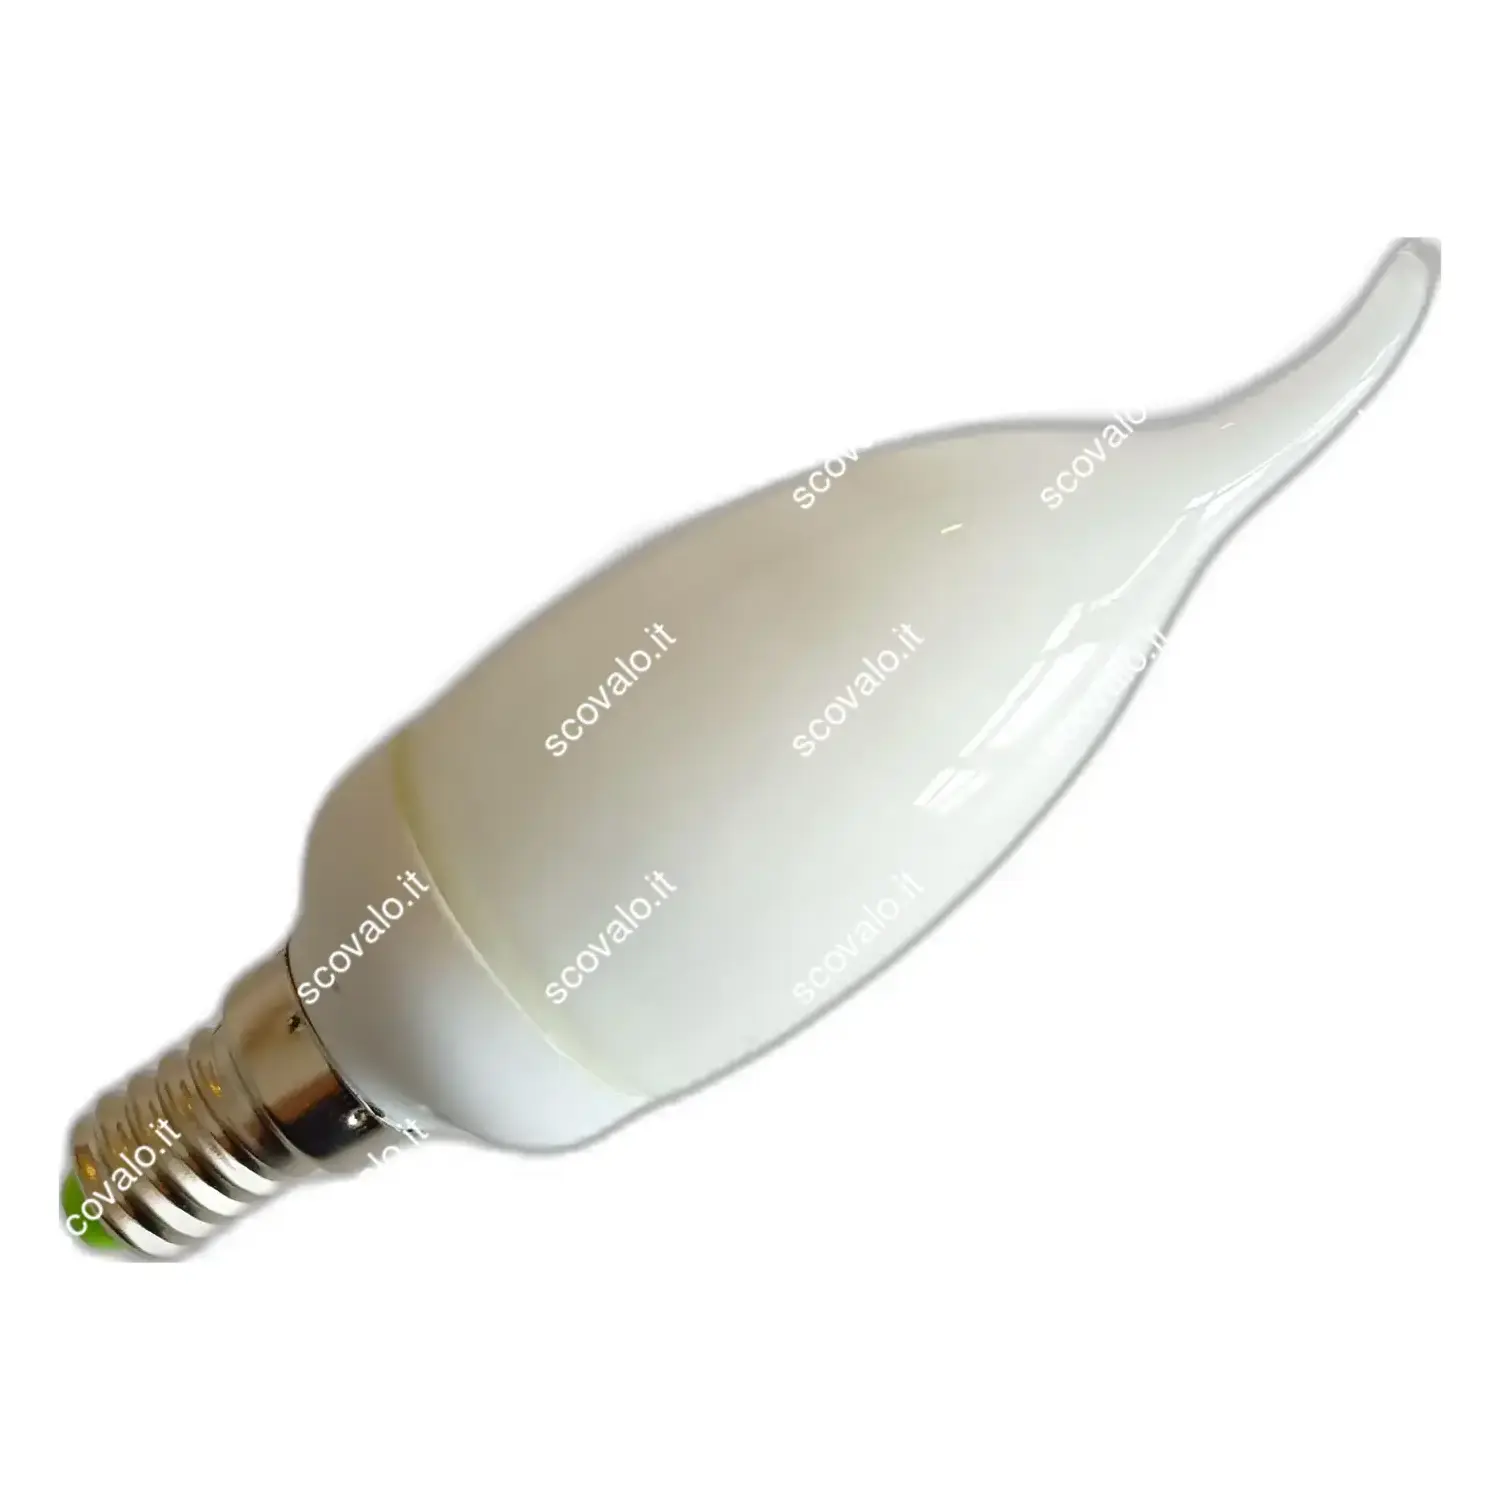 immagine del prodotto lampadina risparmio energetico soffio vento e14 9 watt bianco freddo